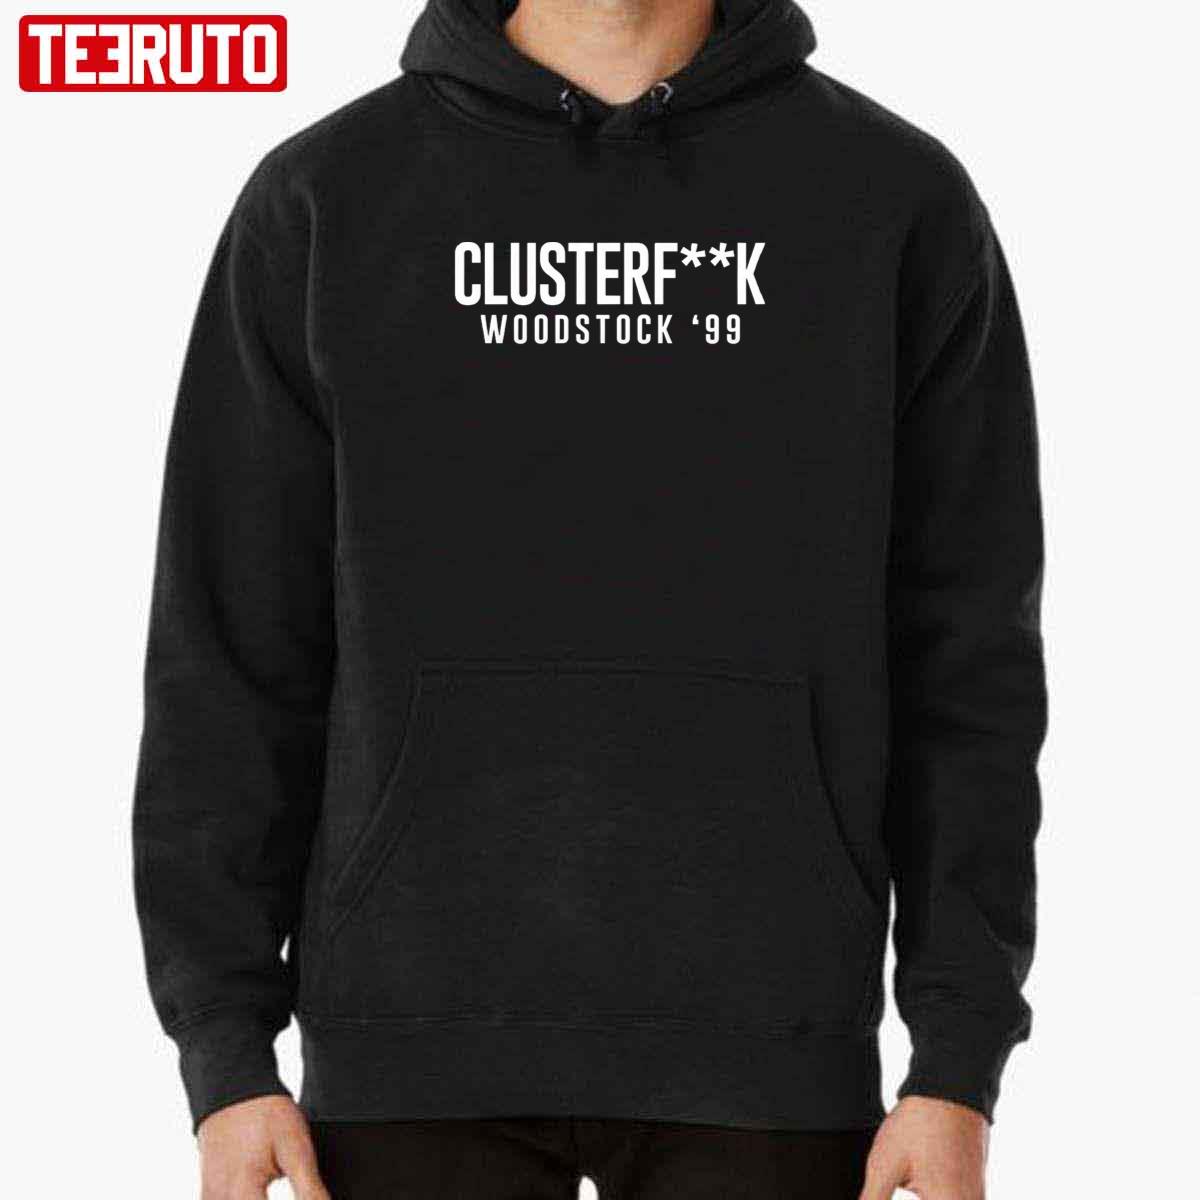 Clusterfk Woodstock ’99 Trainwreck Woodstock ’99 Unisex T-Shirt